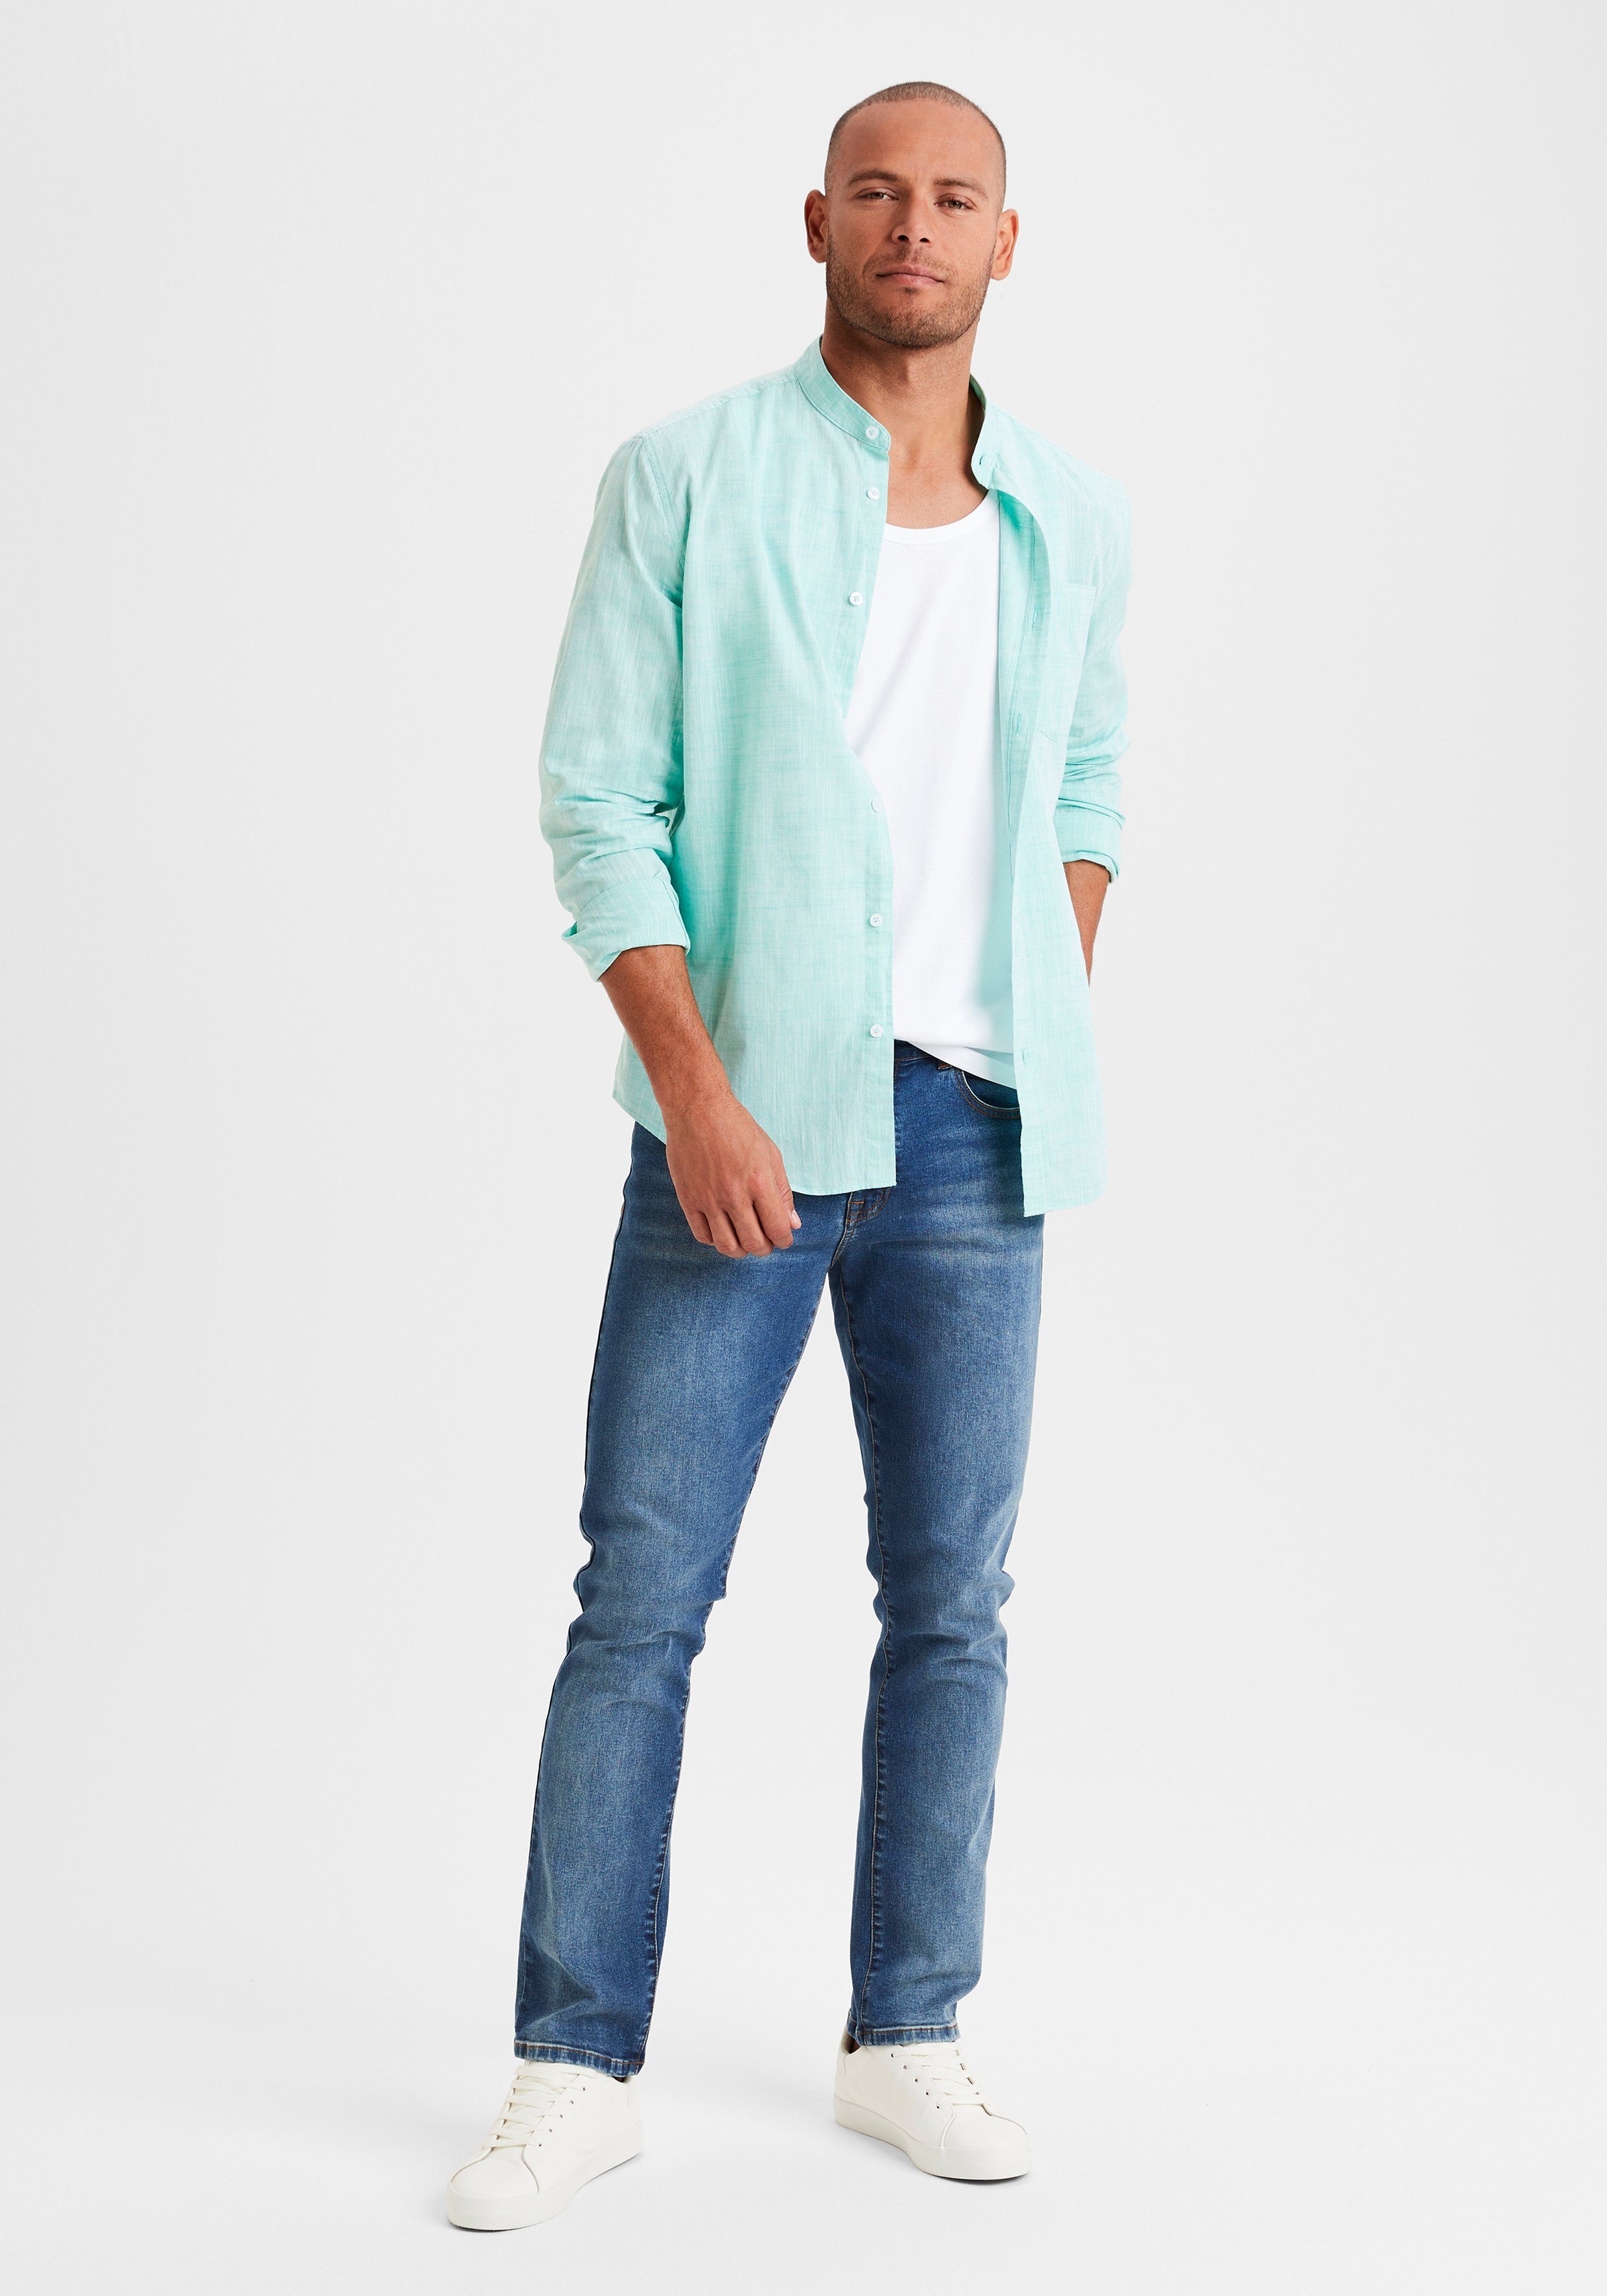 Buffalo 5-Pocket-Jeans Straight-fit Jeans aus dark-blue-denim Denim-Qualität elastischer